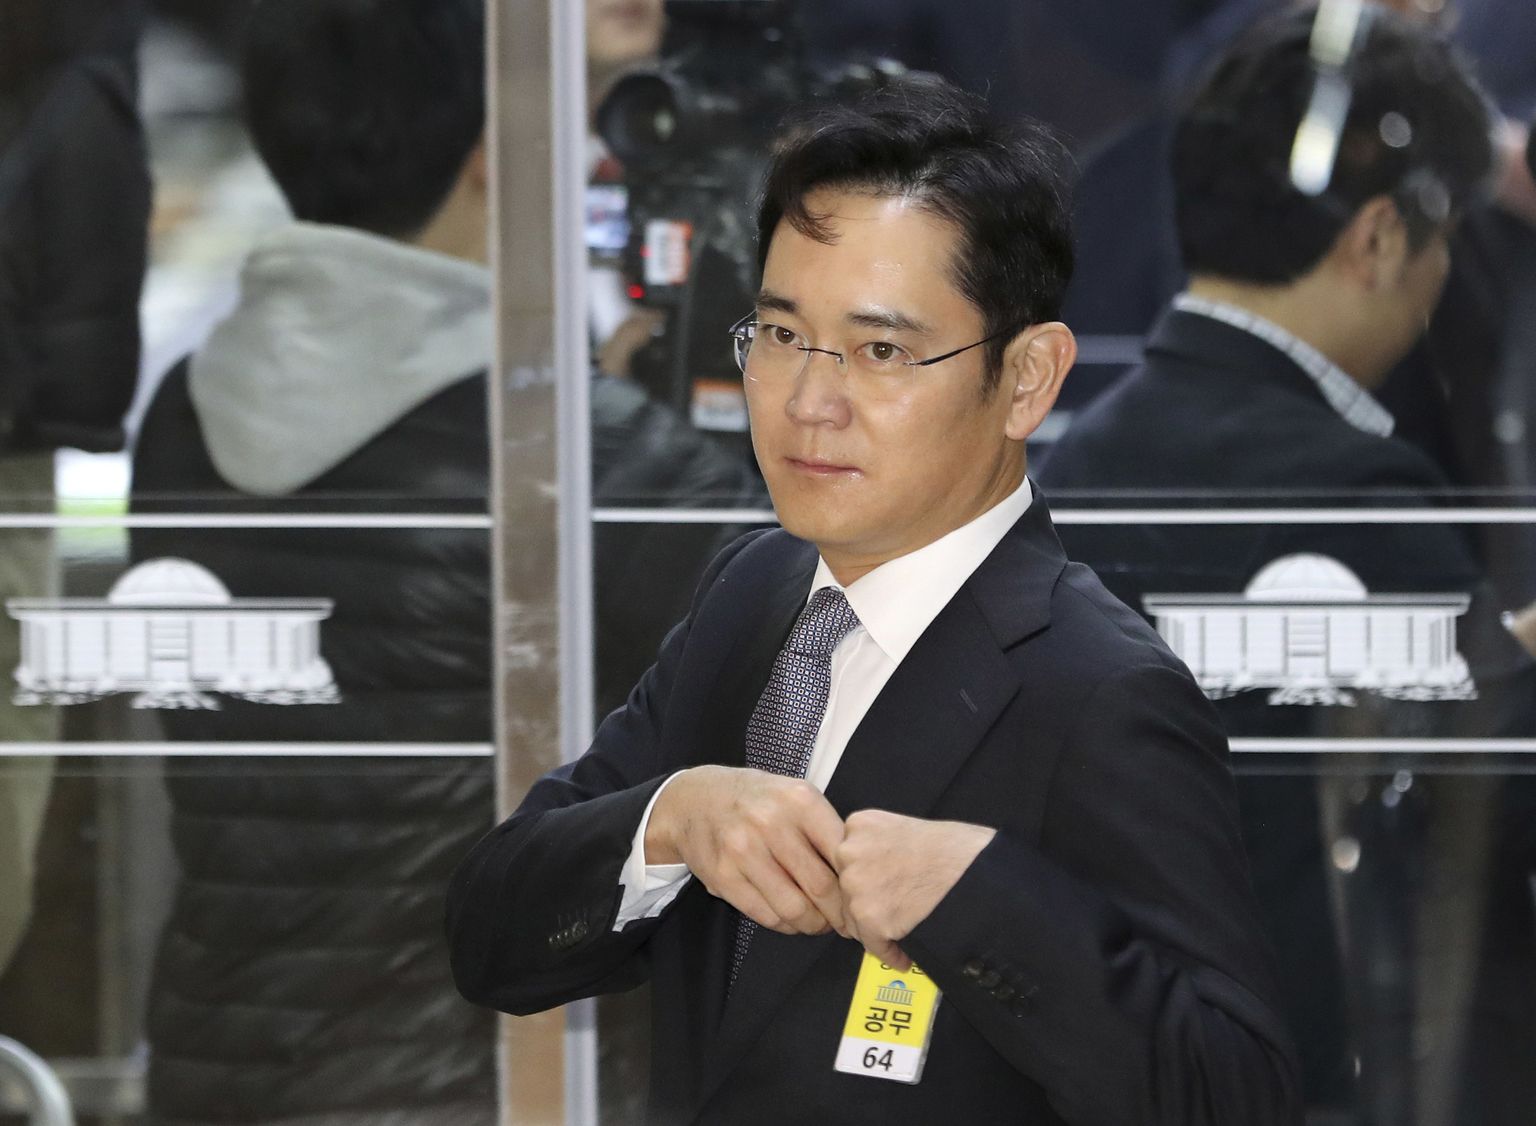 Samsungi aseesimees Lee Jae-Yong.